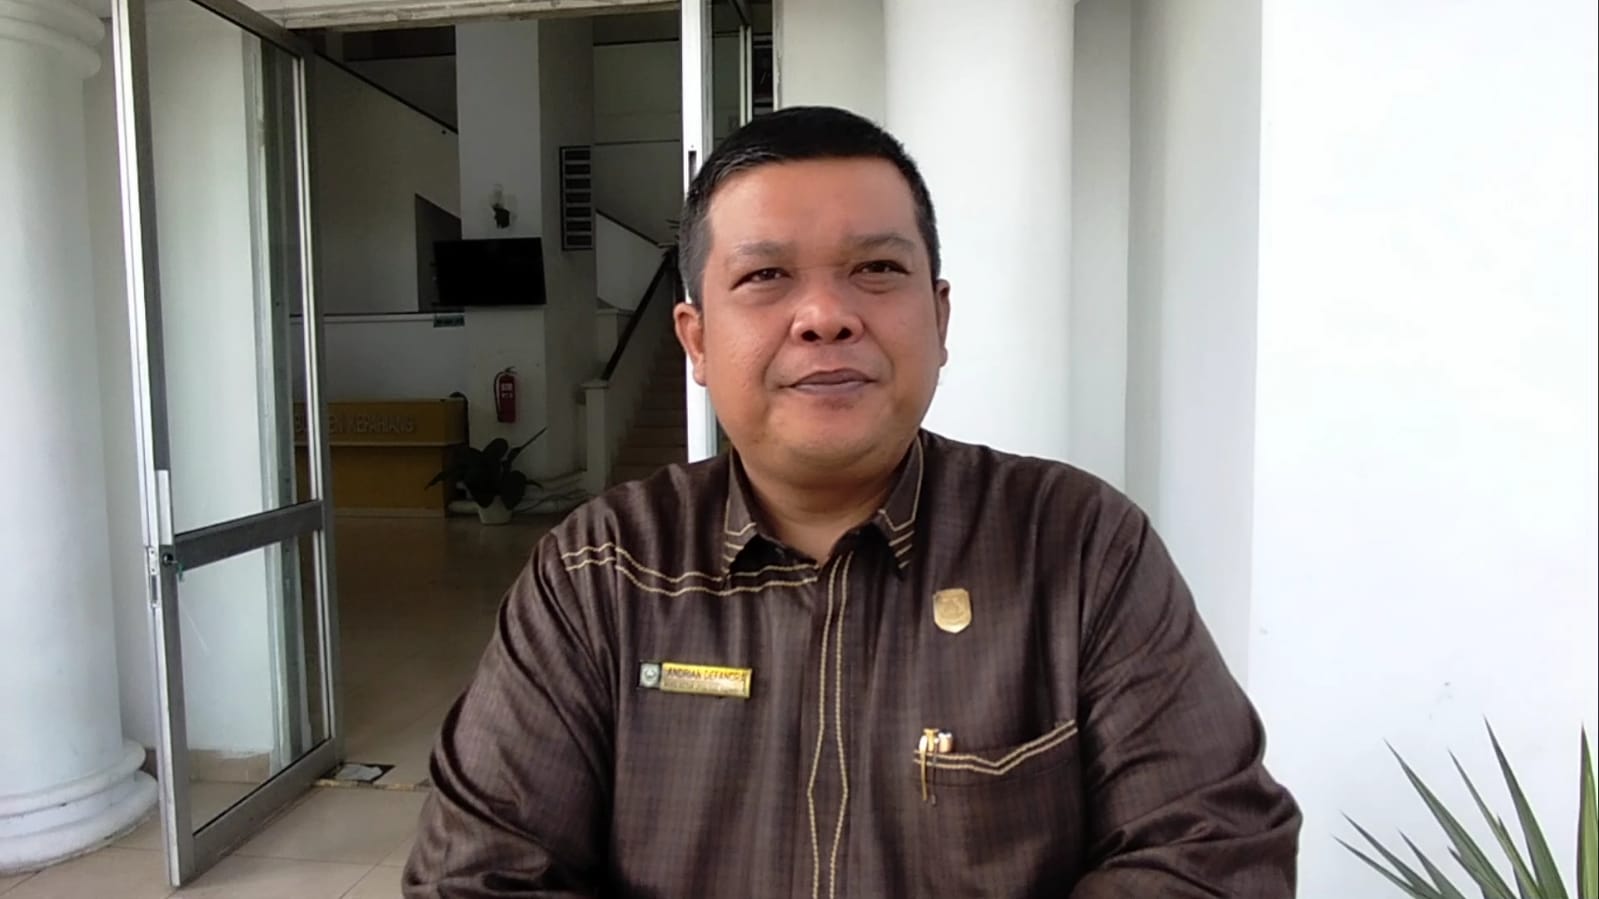 Kades Terjaring OTT Hanya Sebatas Saksi, Begini Tanggapan DPRD Kabupaten Kepahiang